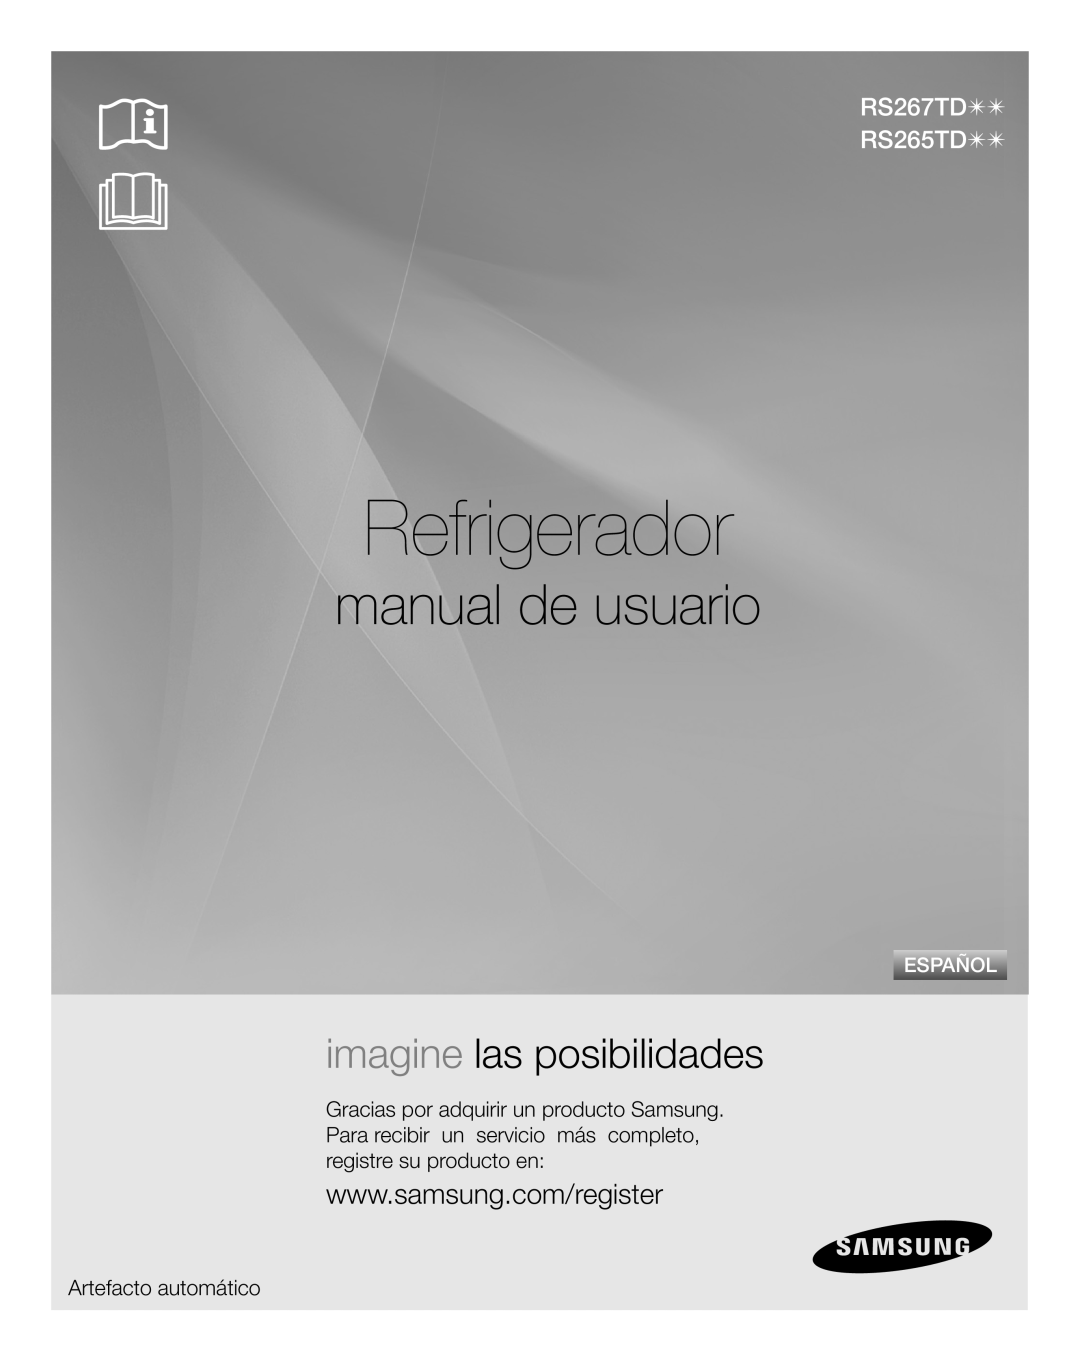 Samsung RS267TDWP Refrigerador, manual de usuario, imagine las posibilidades, RS267TD RS265TD, Artefacto automático 